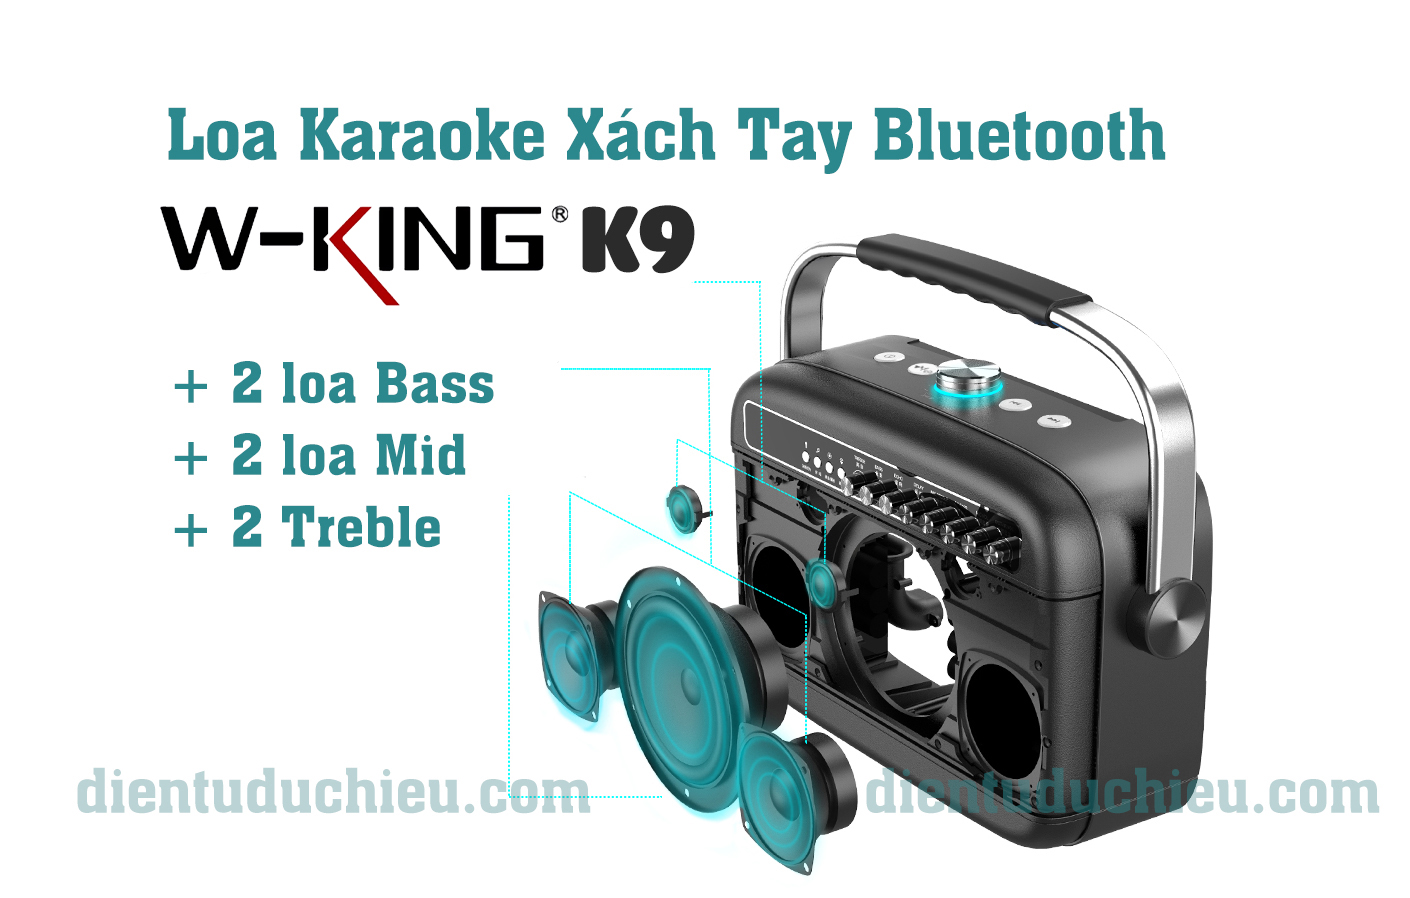 W-King K9 – Loa Karaoke Xách Tay Công Suất Lớn, Hát Cực Hay